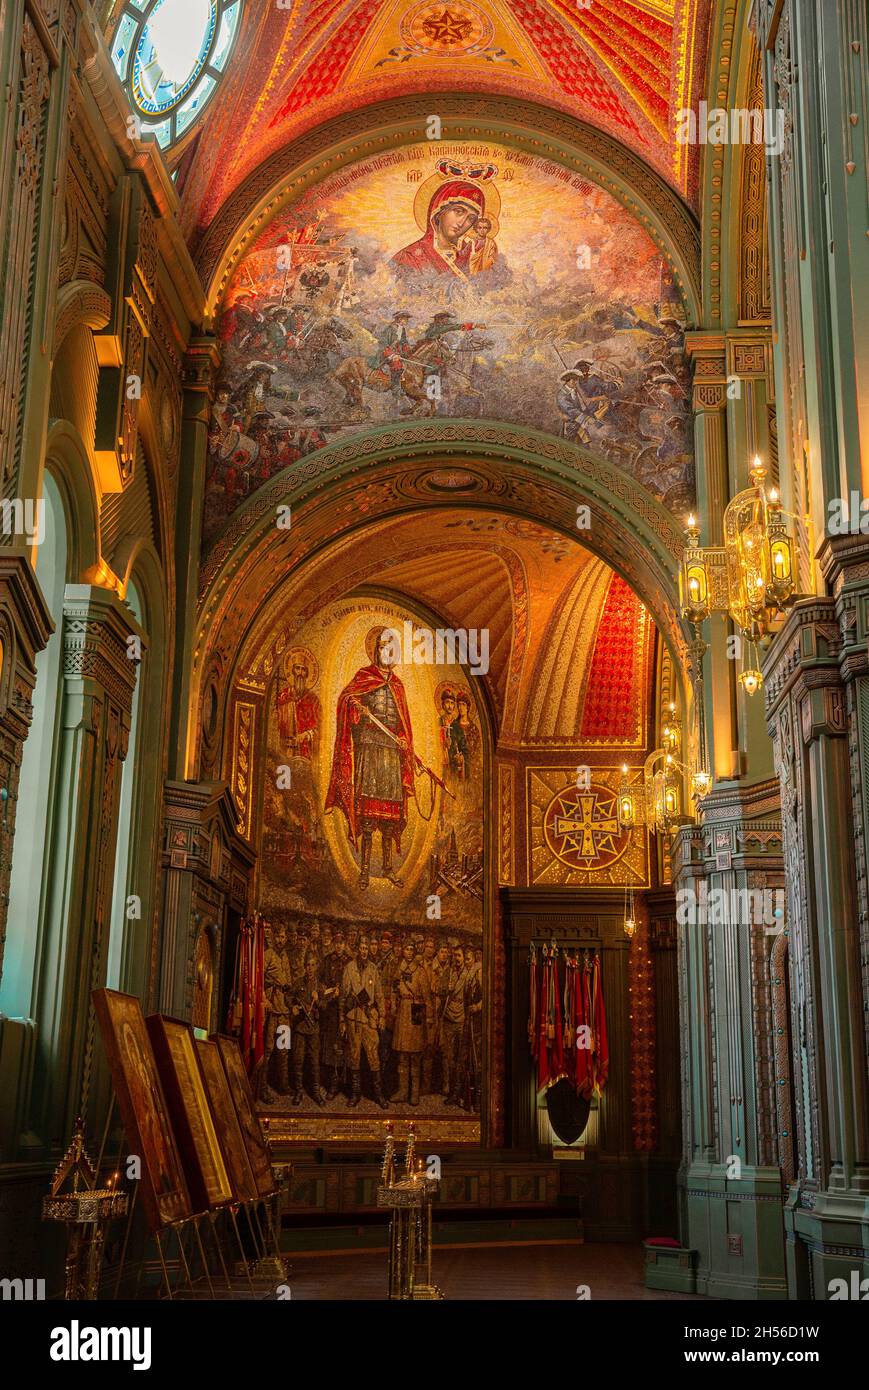 Park Patriot, Mosca regione, Russia - 17 maggio 2021: Cattedrale principale delle forze Armate della Russia, Chiesa interiore Resurrezione di Cristo. Immagini mosaico di Foto Stock